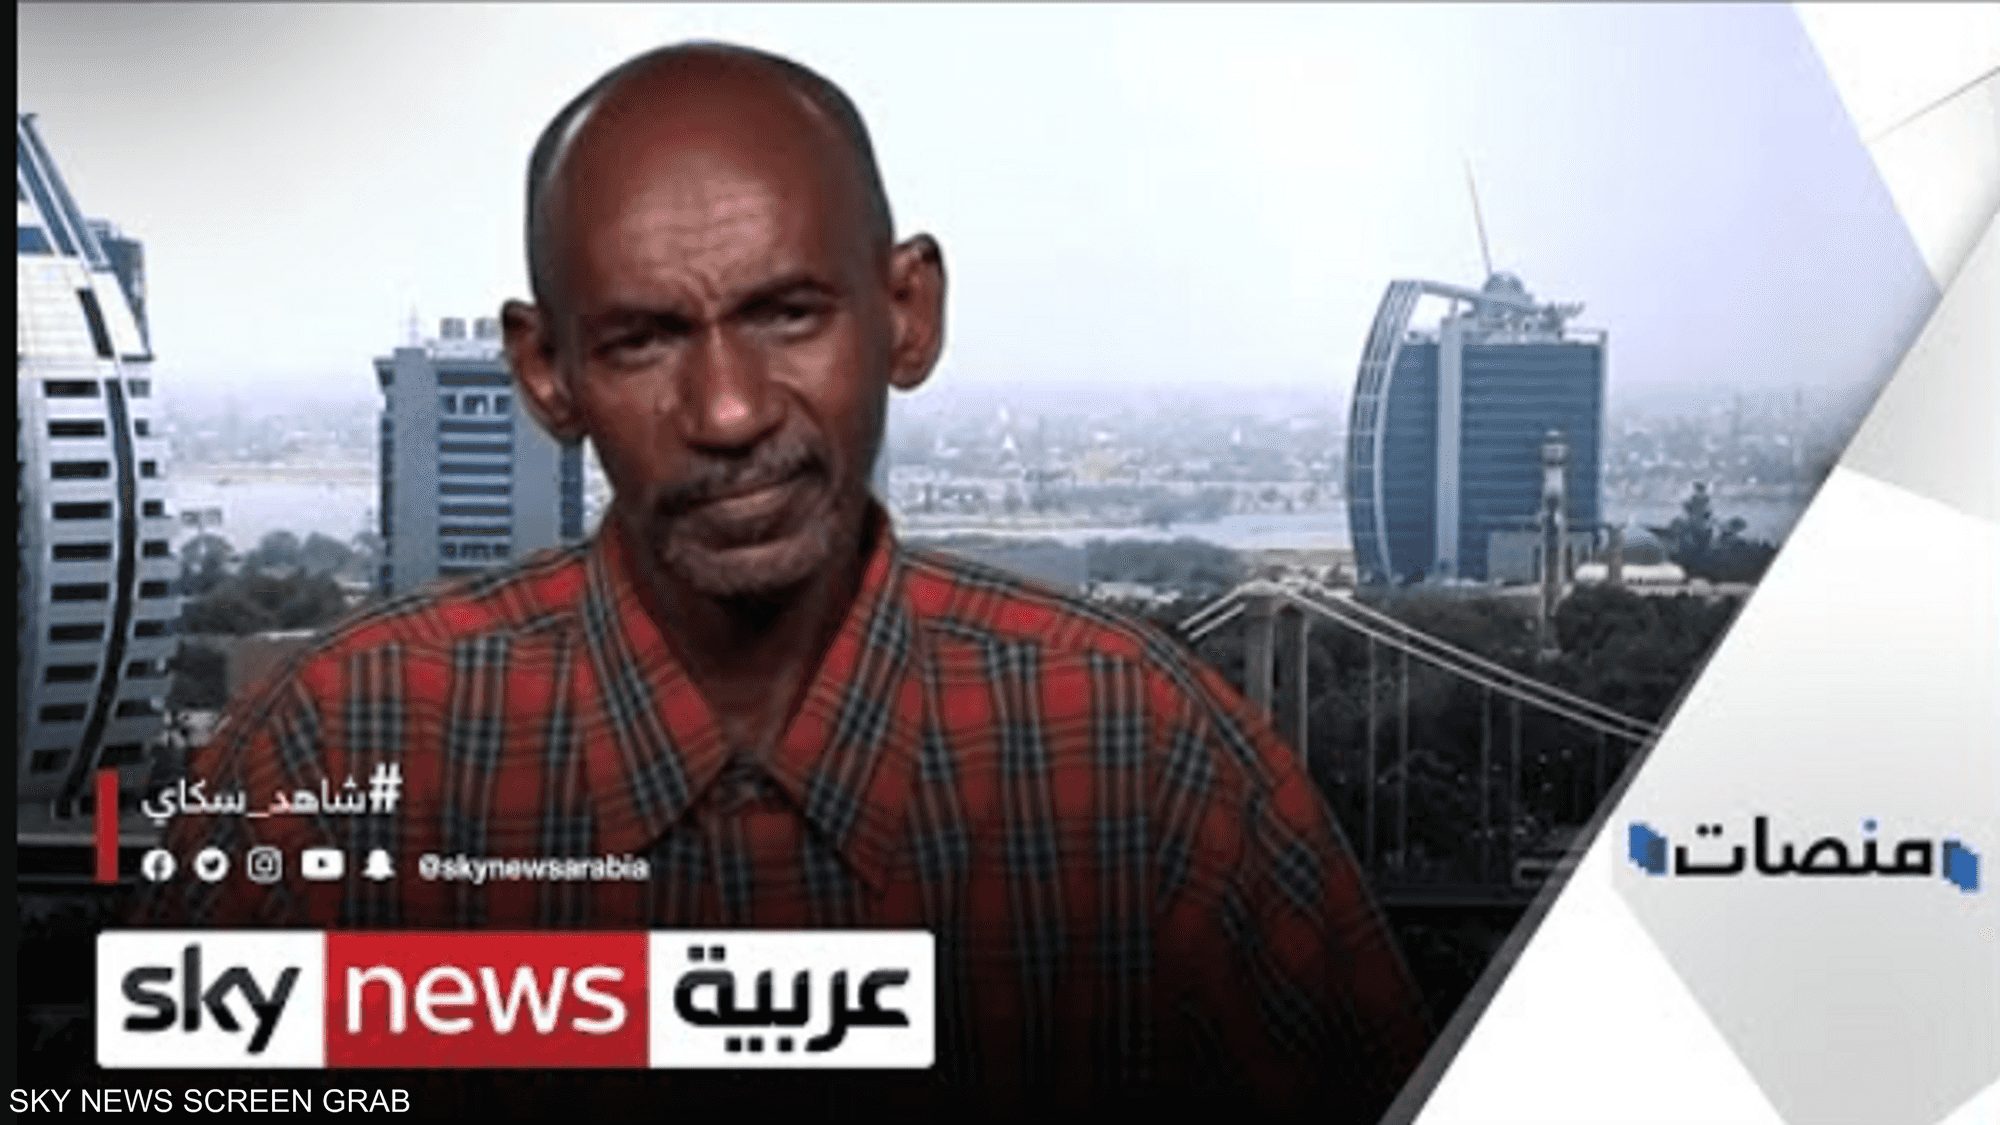 لقاء خاص مع مهندس البث الذي رفض أوامر الانقلابيين في السودان